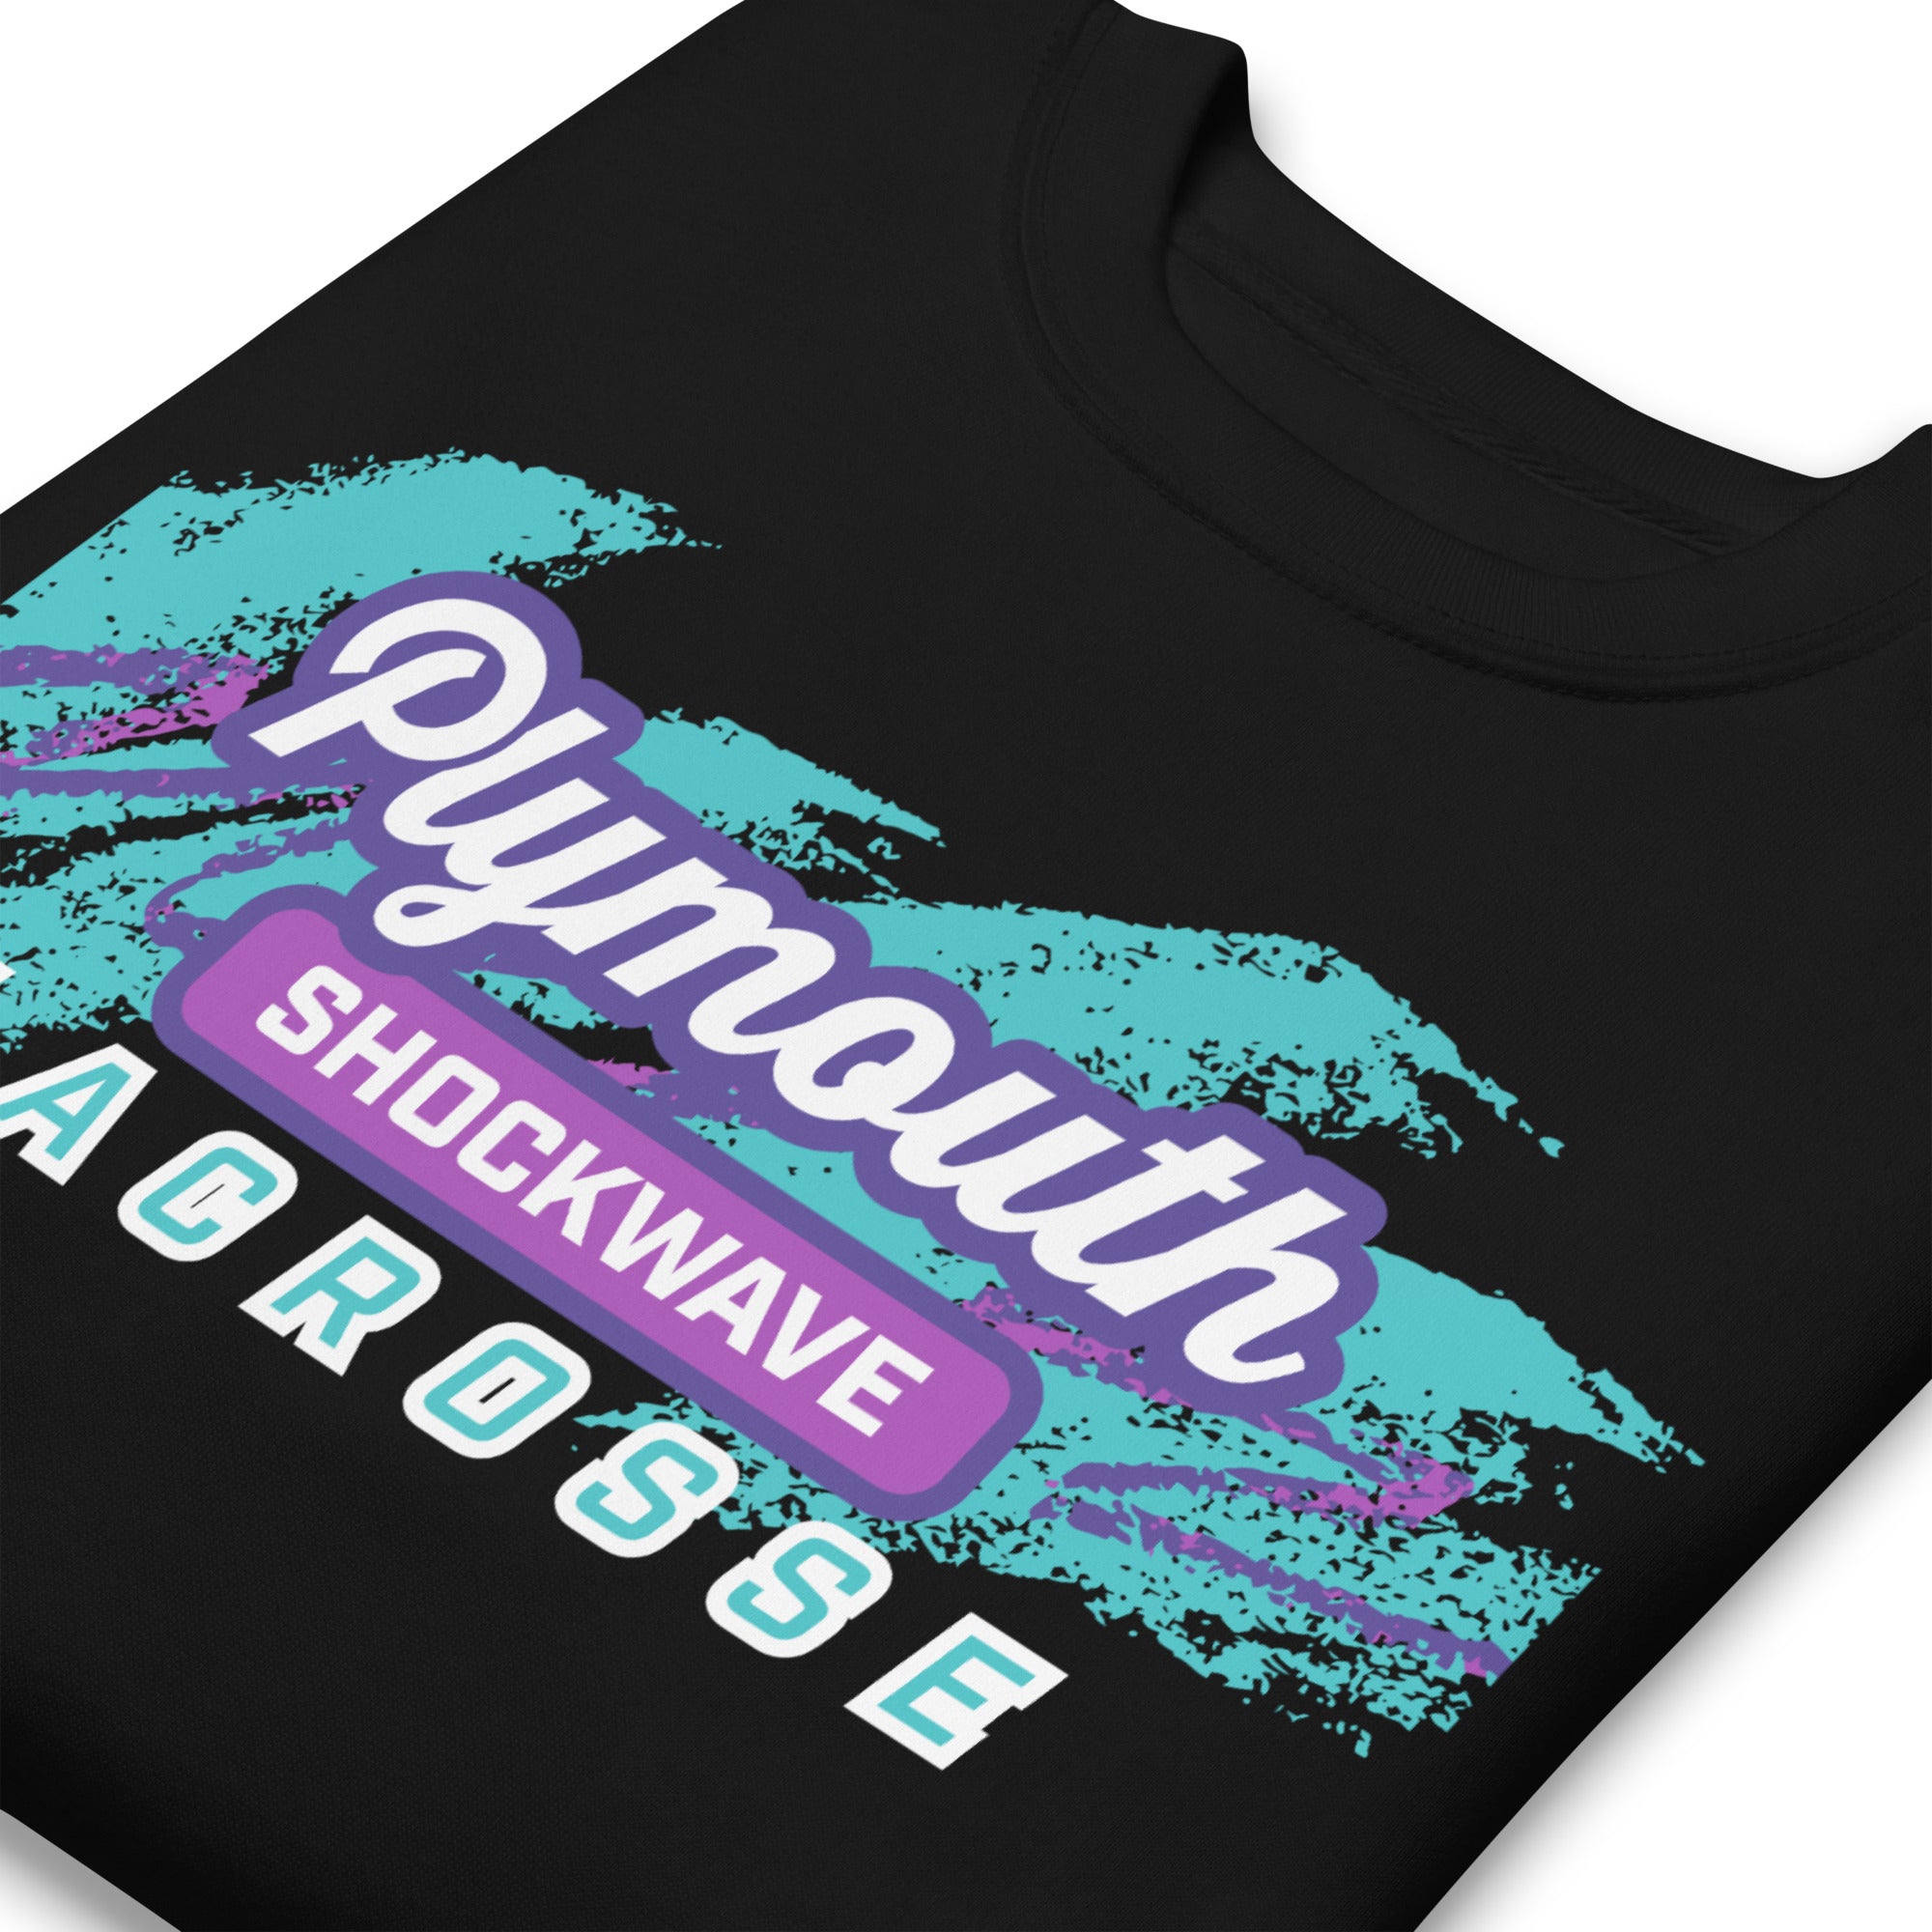 Shockwave Unisex Crewneck Sweatshirt